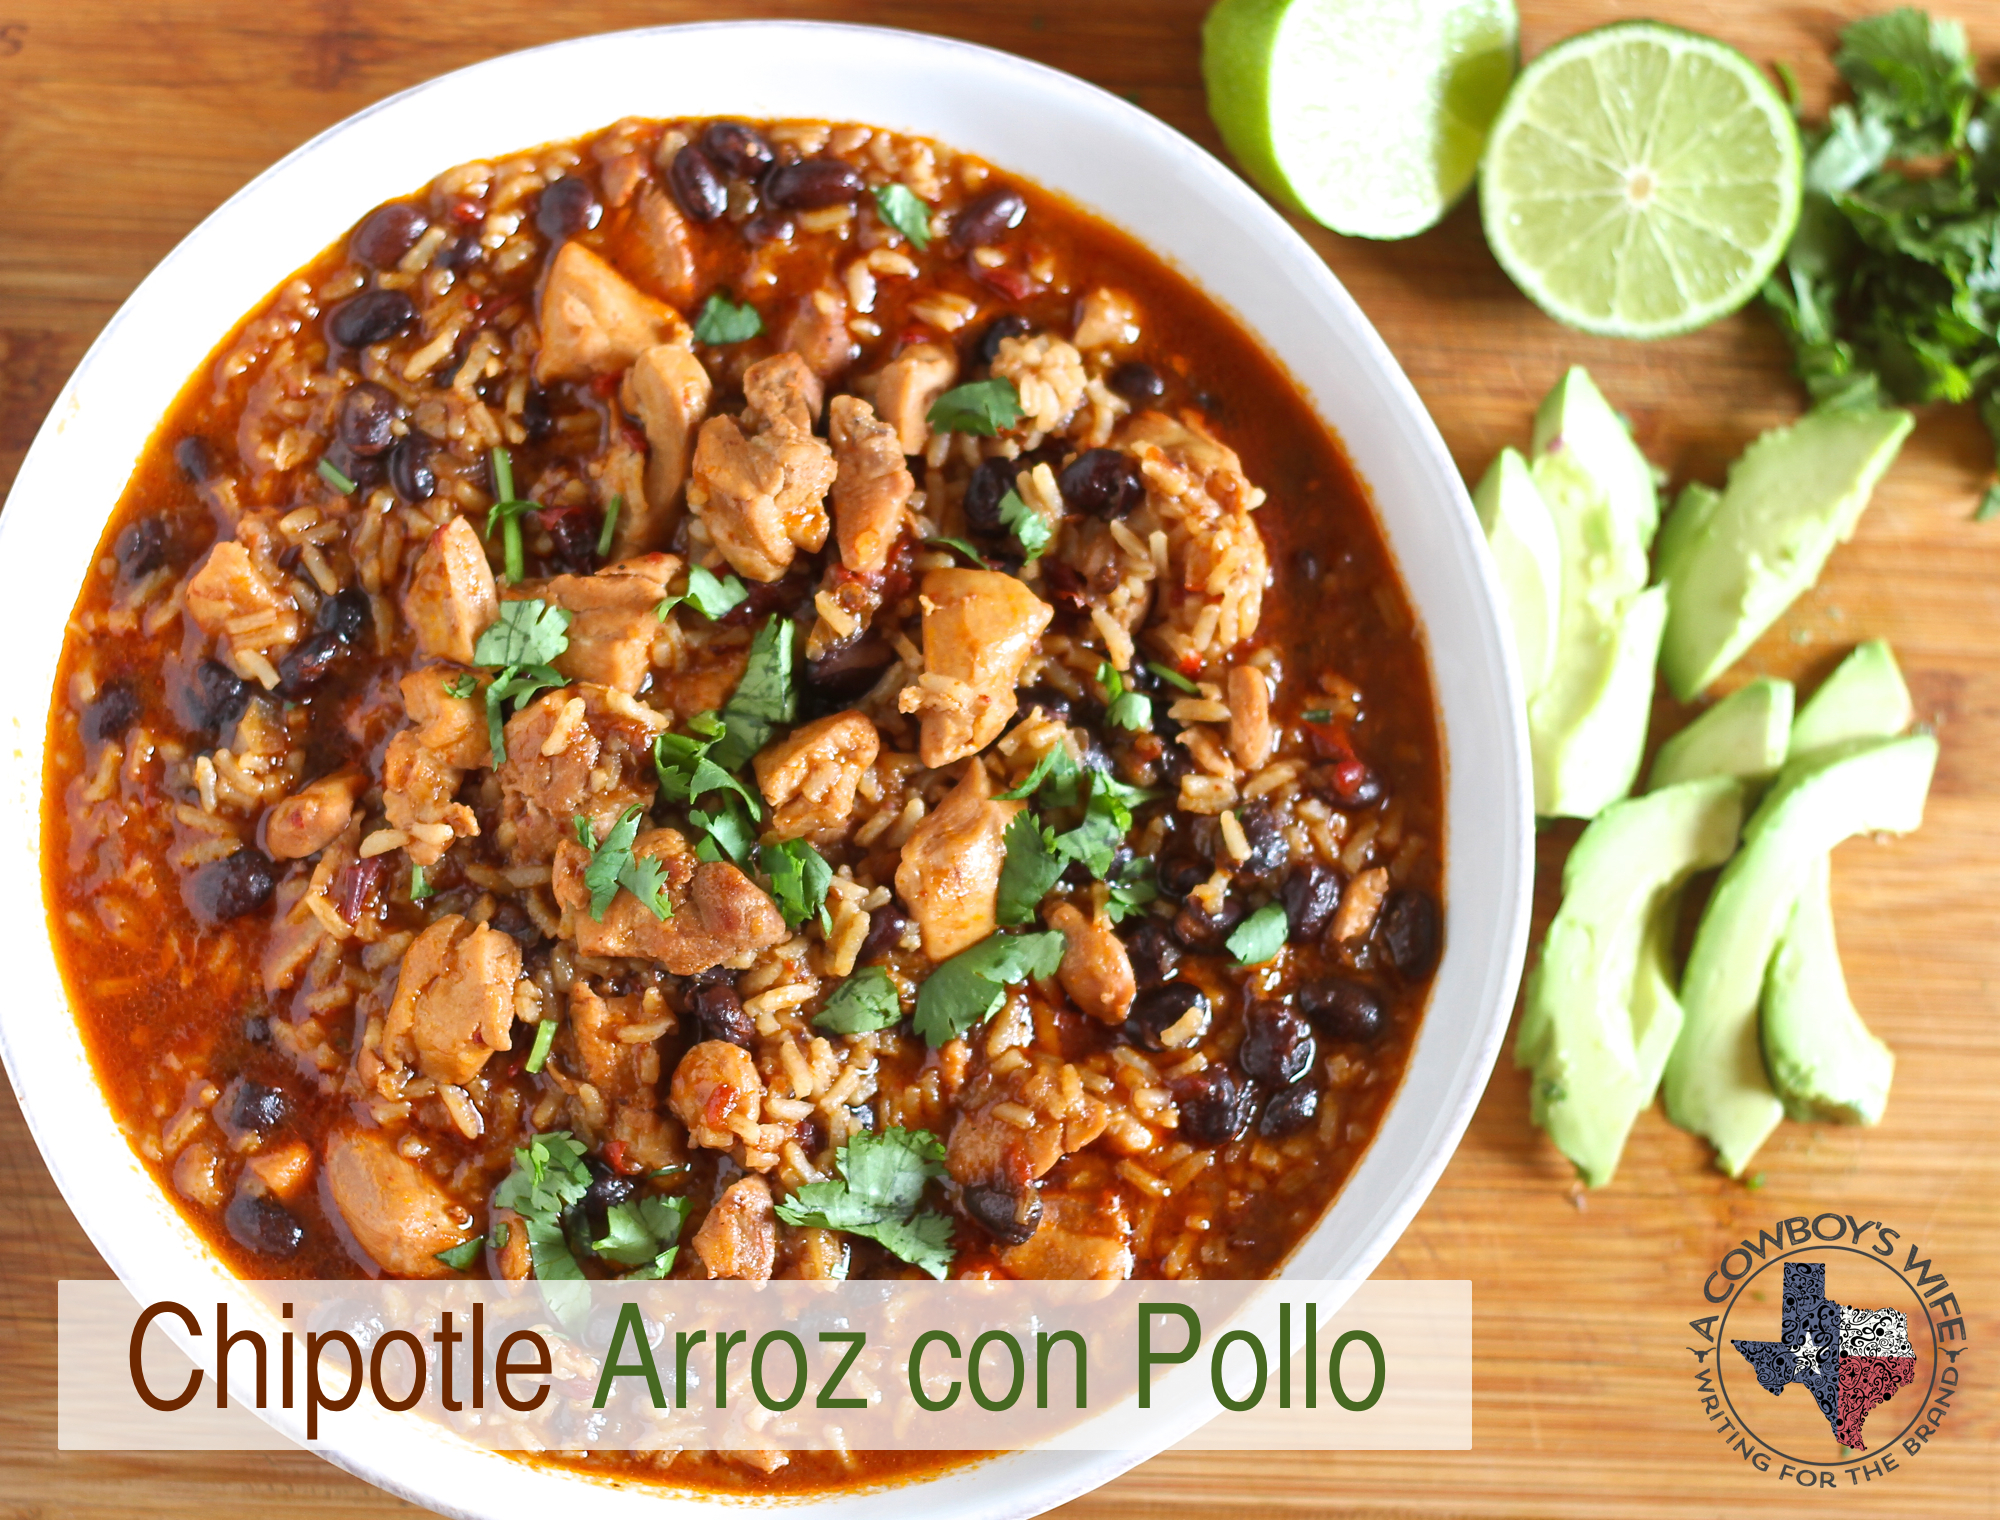 An Easy Mexican Soup - Chipotle Arroz con Pollo - A Cowboy's Wife